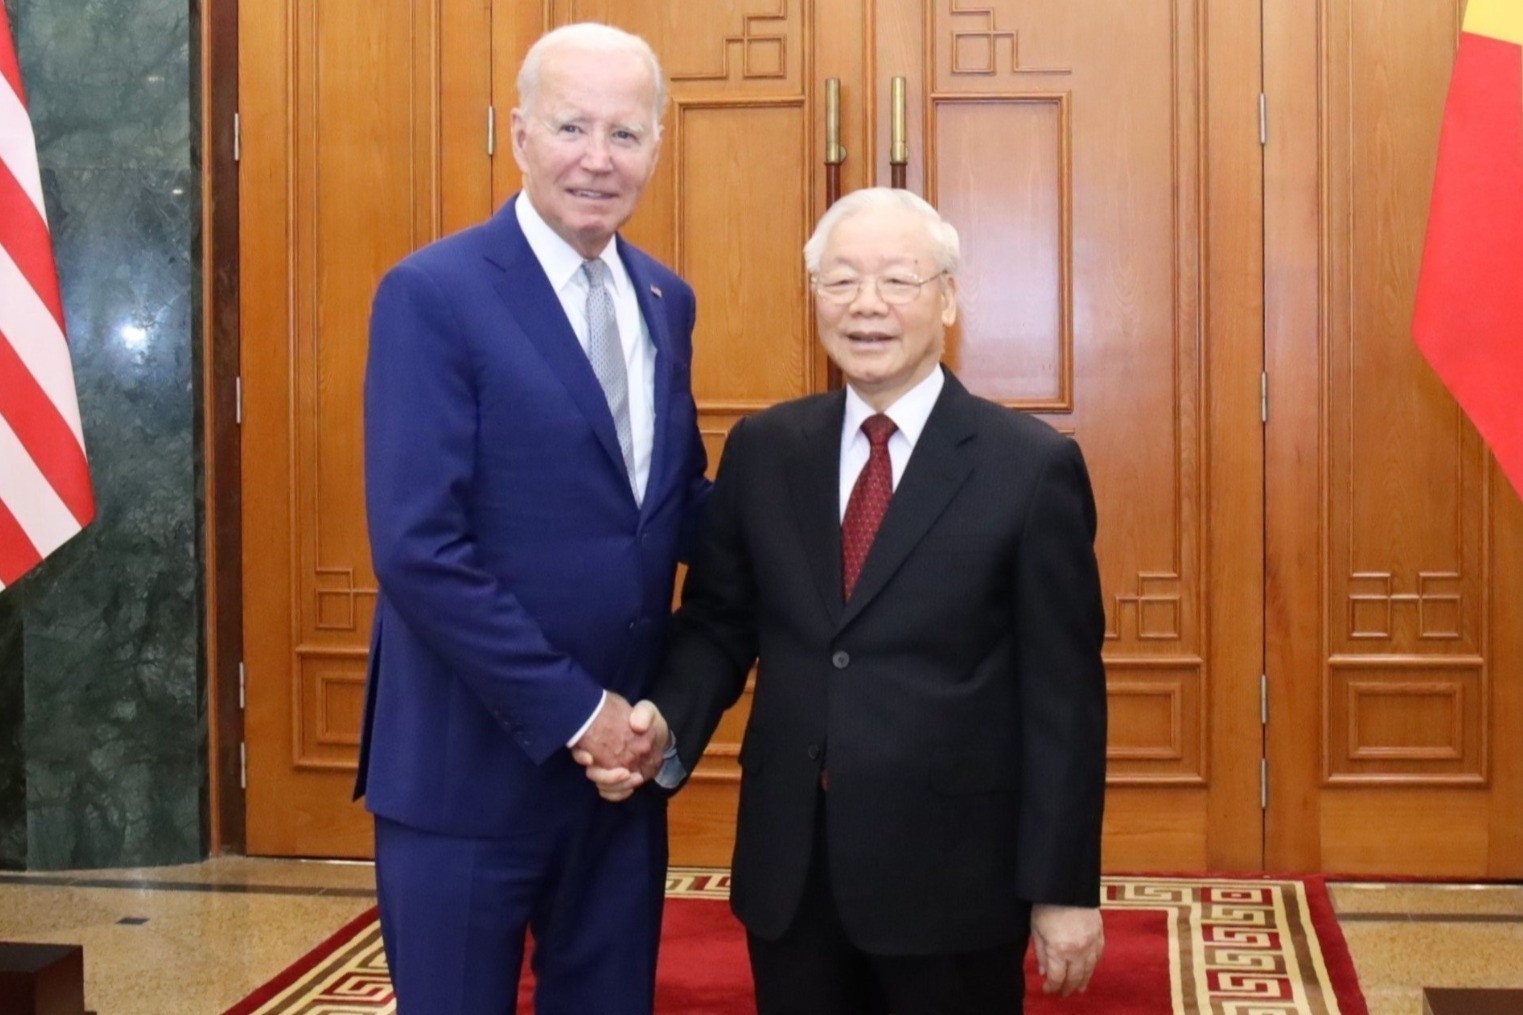 Kết quả trọn vẹn trong ngày đầu Tổng thống Mỹ Joe Biden thăm Việt Nam